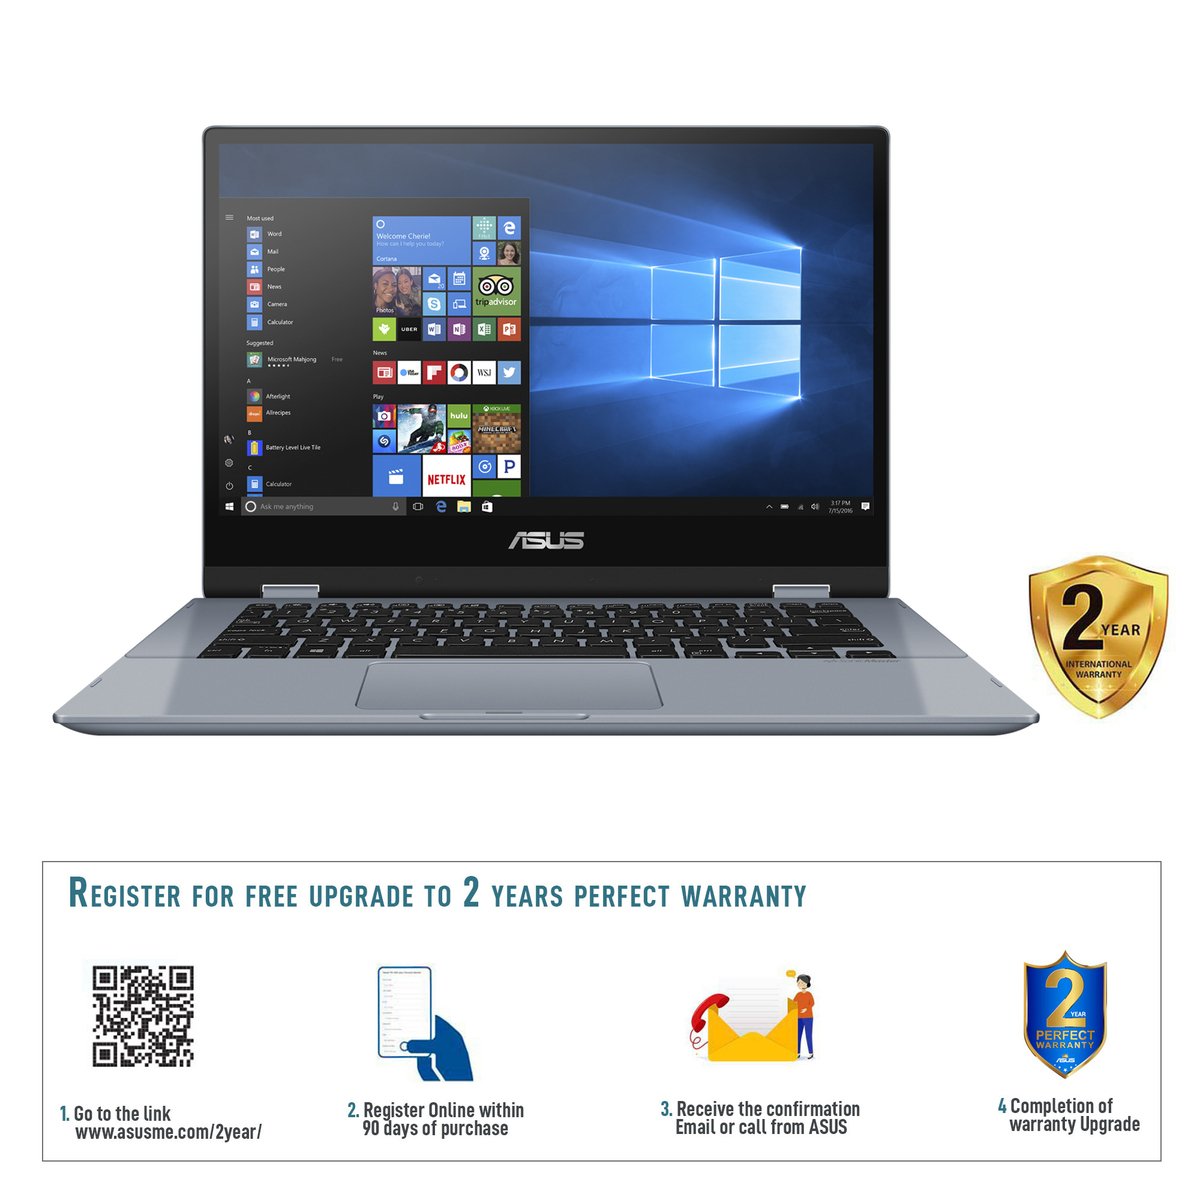 ASUS Vivobook Flip 14 TP412FA-EC404T, Touch Laptop, Core i3-10110U, 4GB RAM, 256GB PCIE G3 SSD, Intel UMA, 14.0 inch FHD (1920X1080) 16:9, Windows 10 Home, Grey, with Stylus Pen